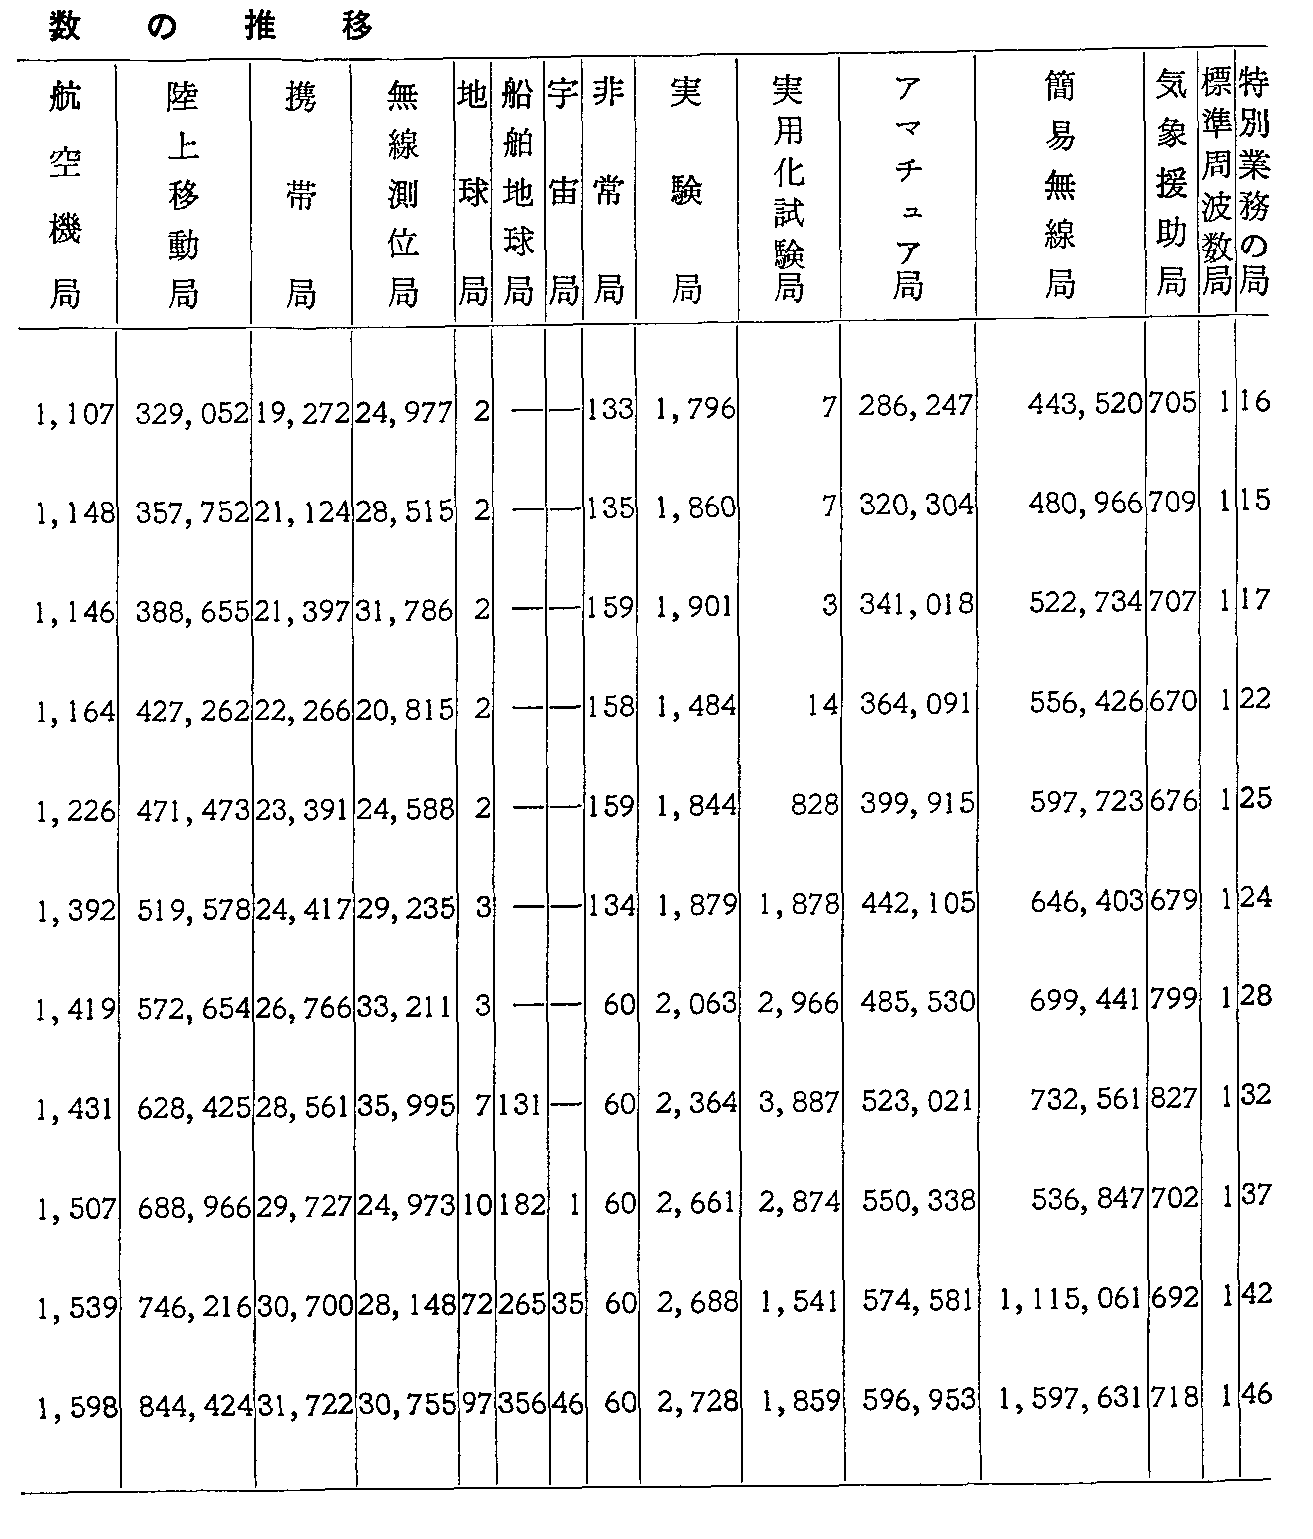 資料2-96 無線局数の推移(2)